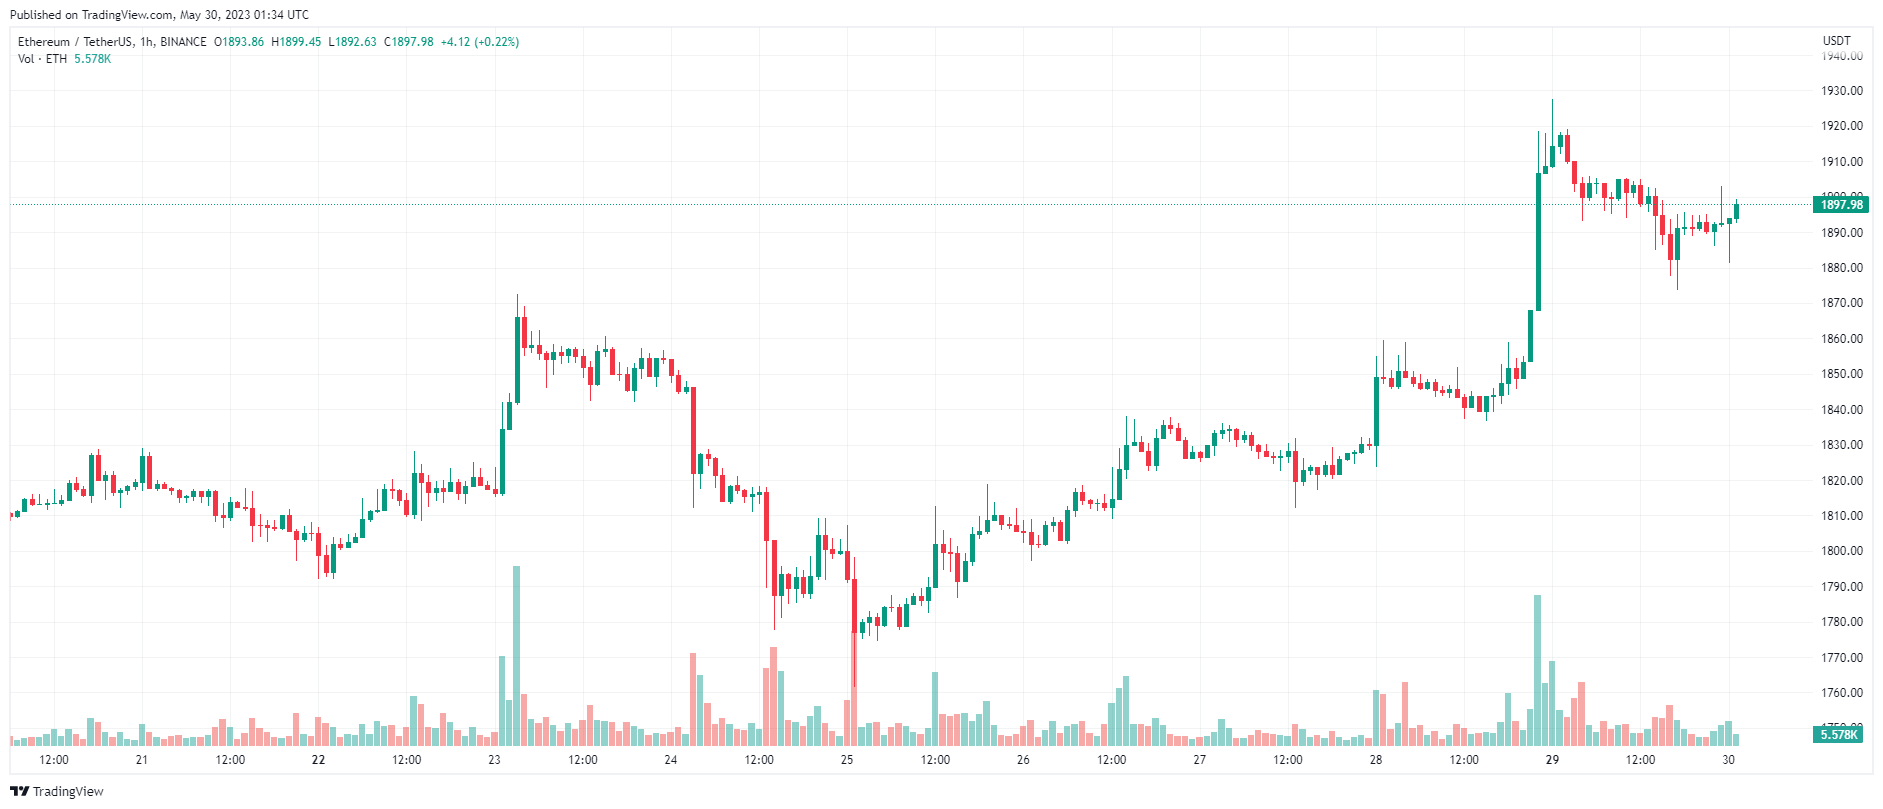 Giá Coin hôm nay 30/05: Bitcoin giảm về dưới $ 28.000, altcoin hạ nhiệt, chứng khoán tăng nhẹ khi Hoa Kỳ đạt được thỏa thuận dự kiến về việc nâng trần nợ